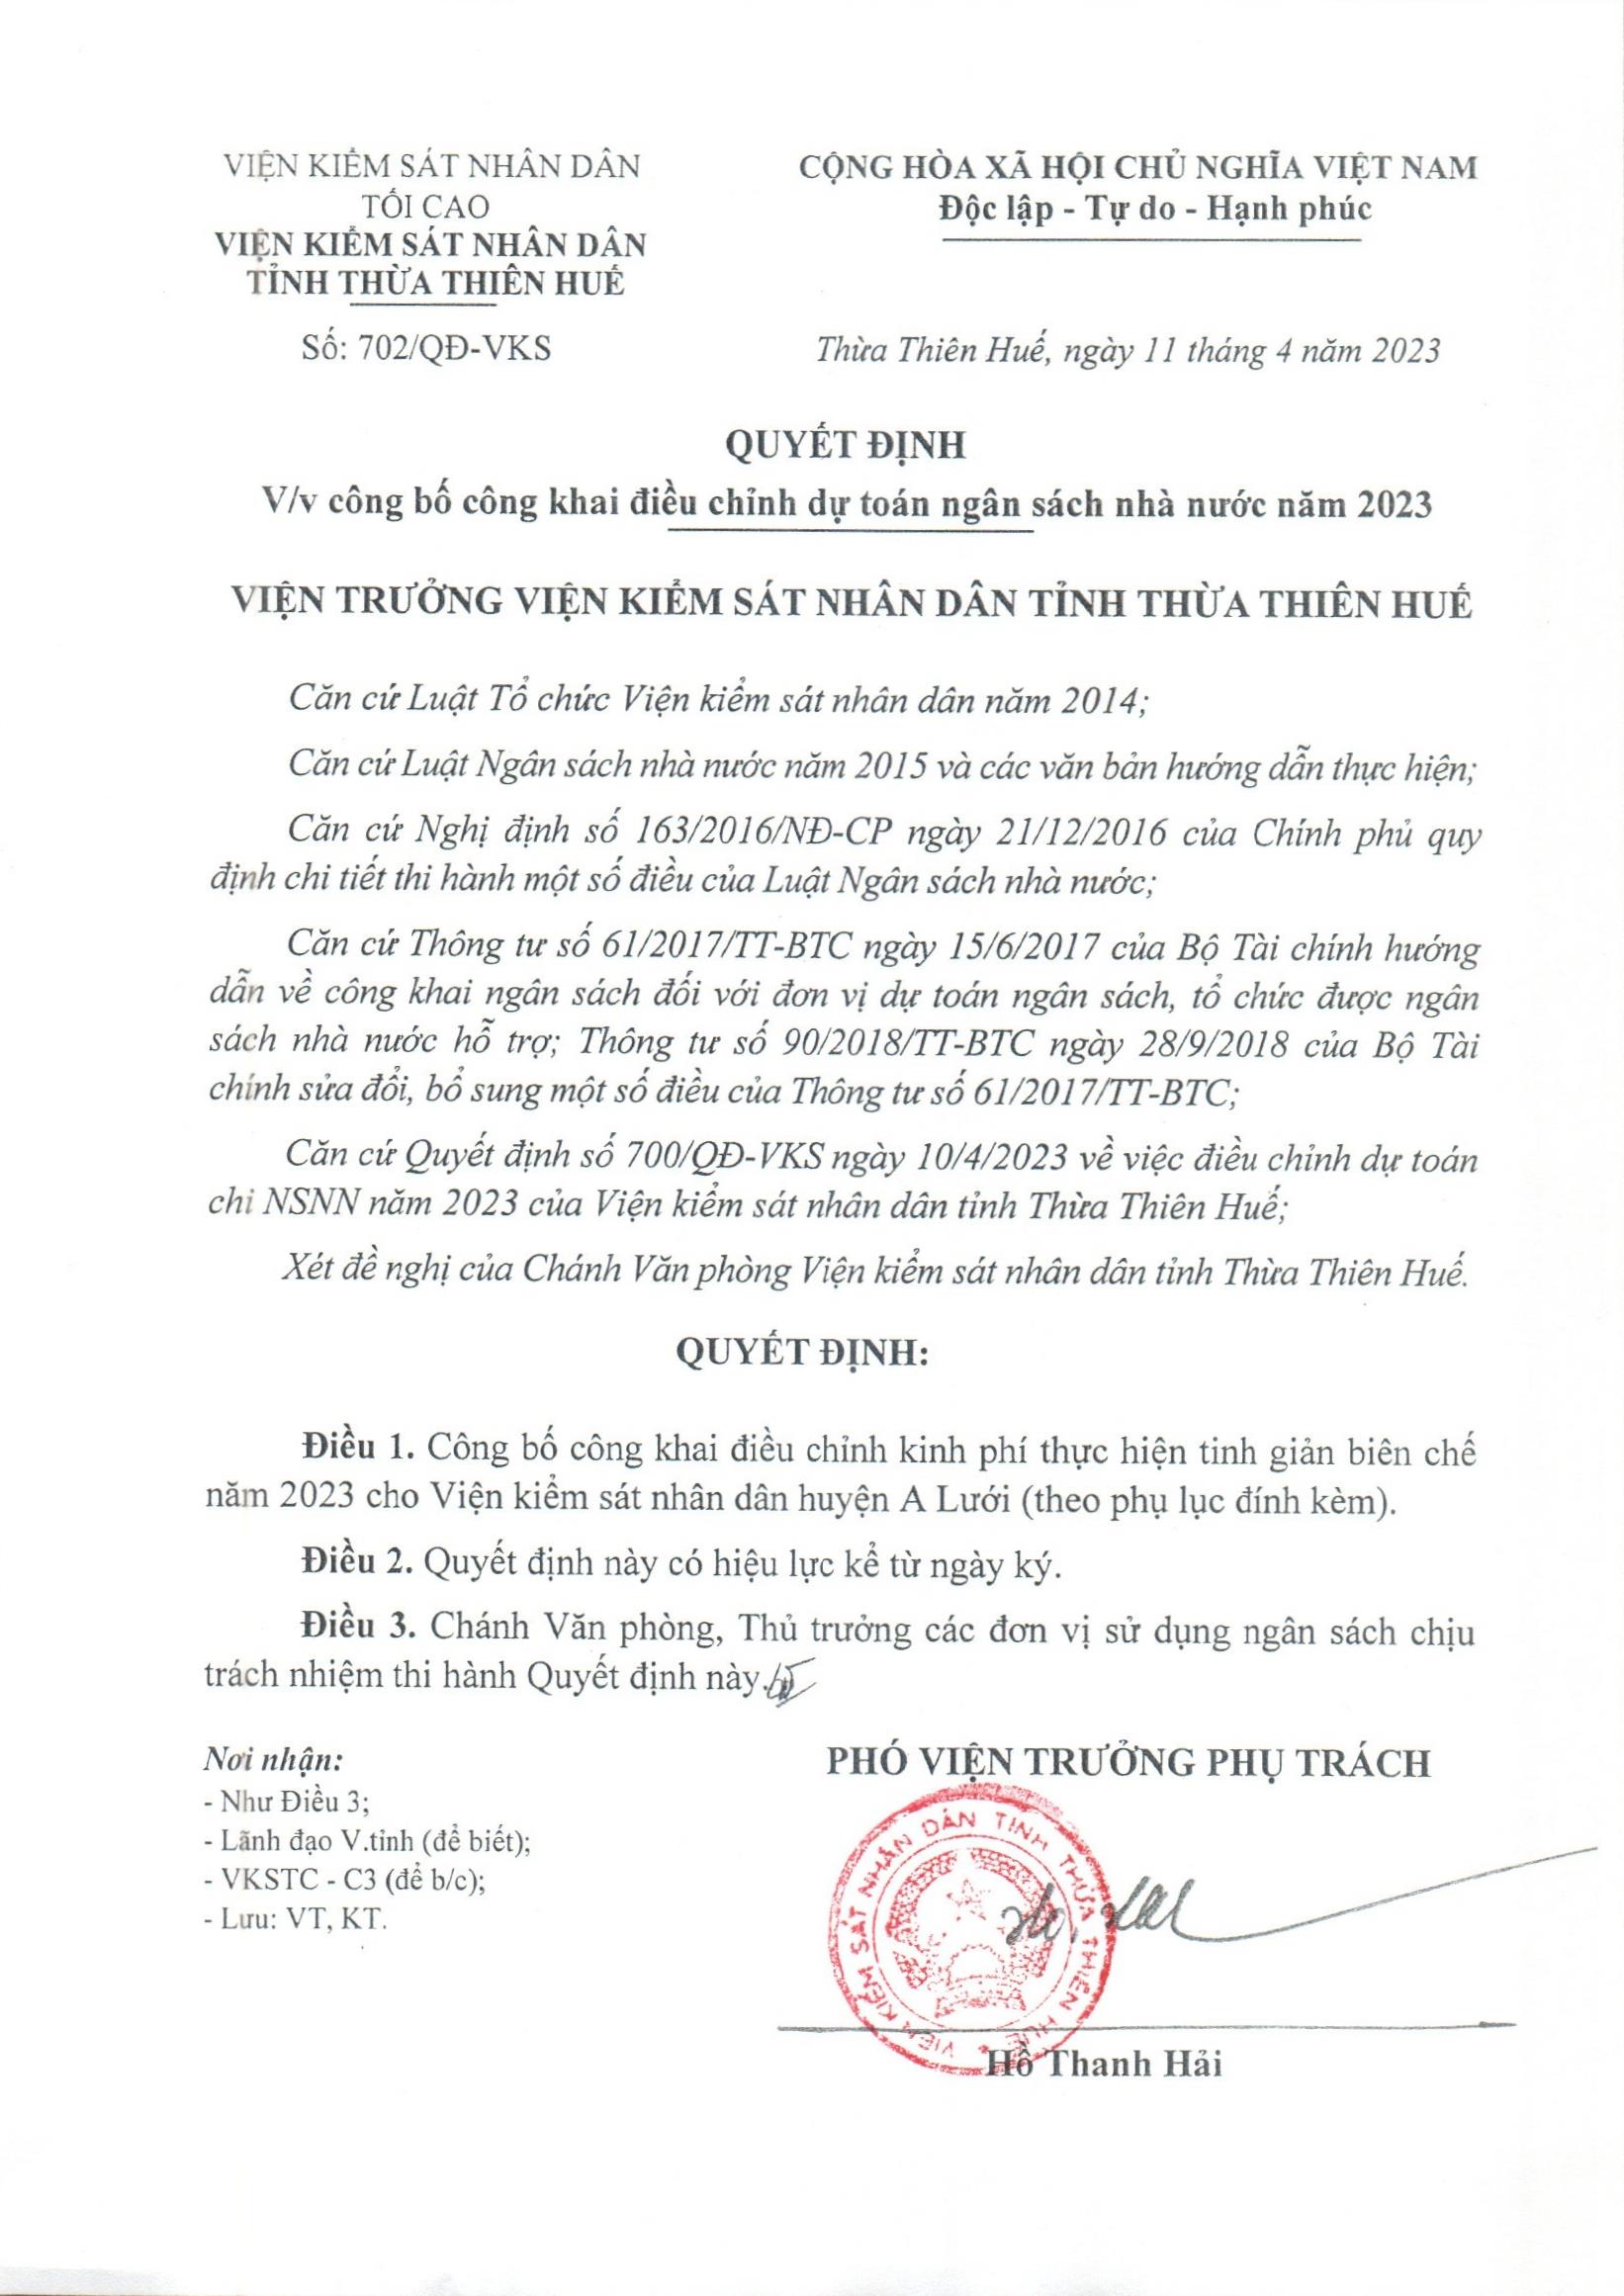 cong khai dieu chinh du toan 2023 dot2 page 1